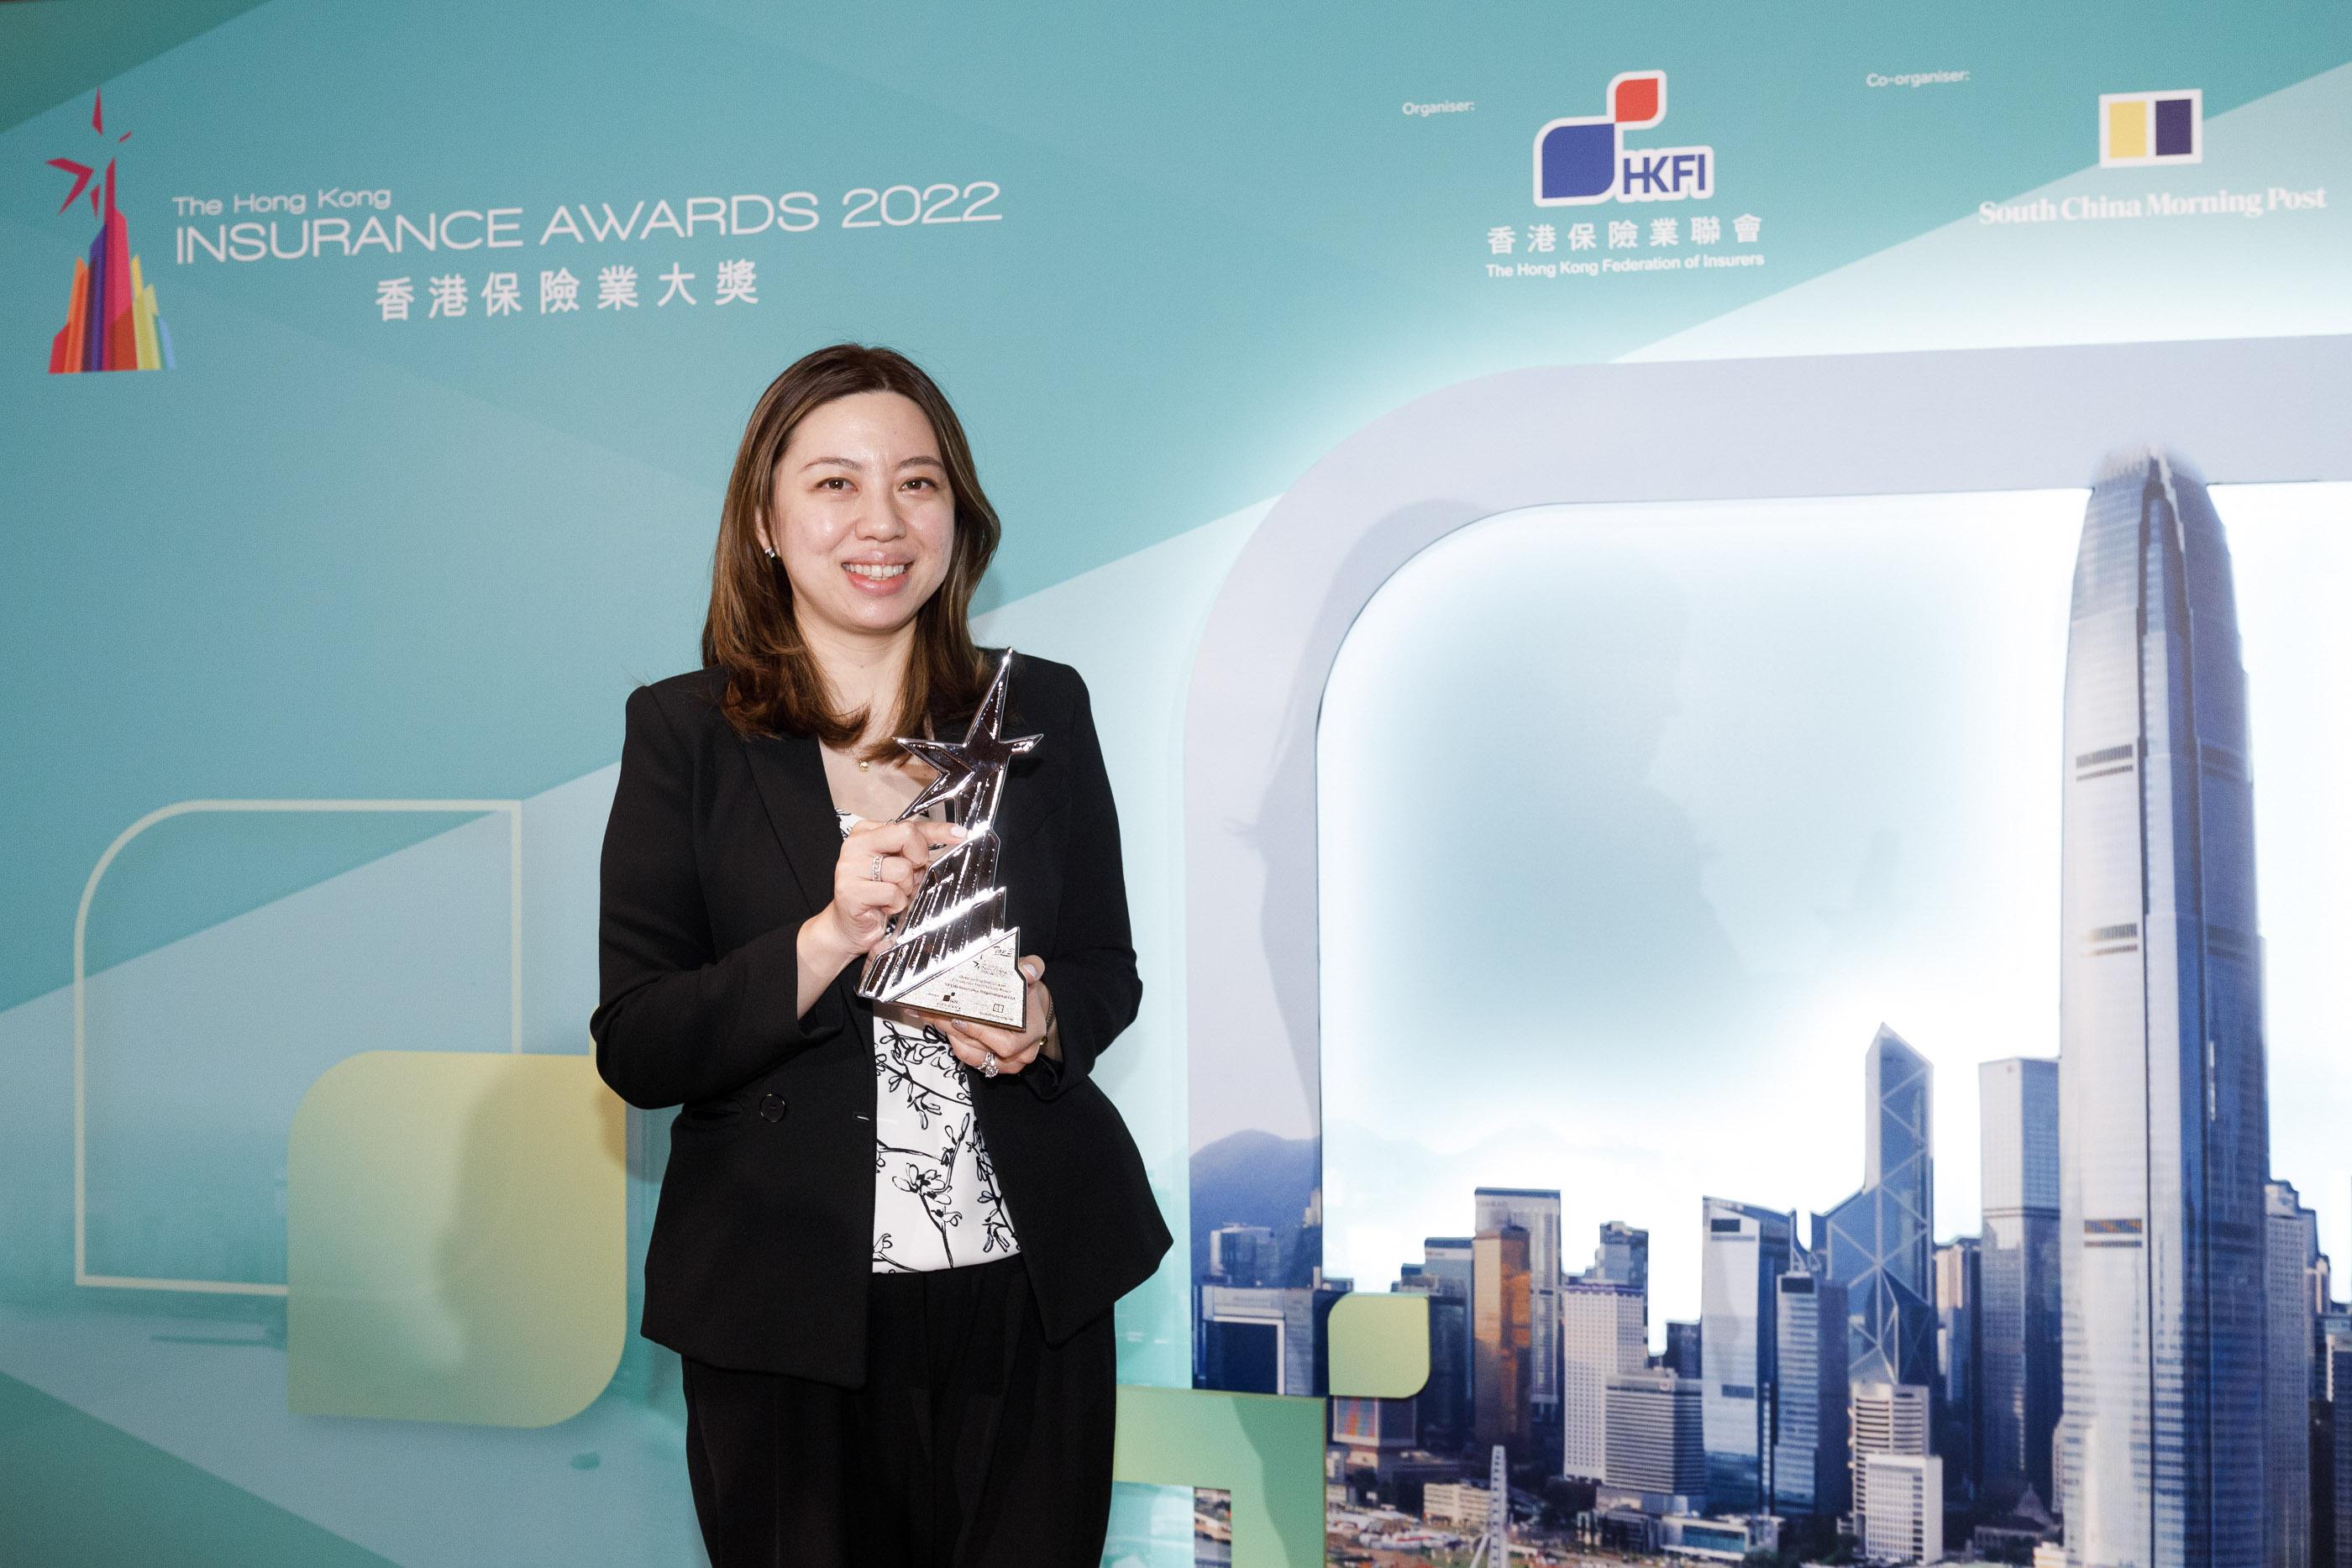 萬通保險產品策略及定價部主管許丹萍小姐出席《香港保險業大獎 2022 》頒獎典禮，代表公司接受「傑出創意產品／服務大獎 ─ 人壽保險（健康保障）」年度三強獎項。